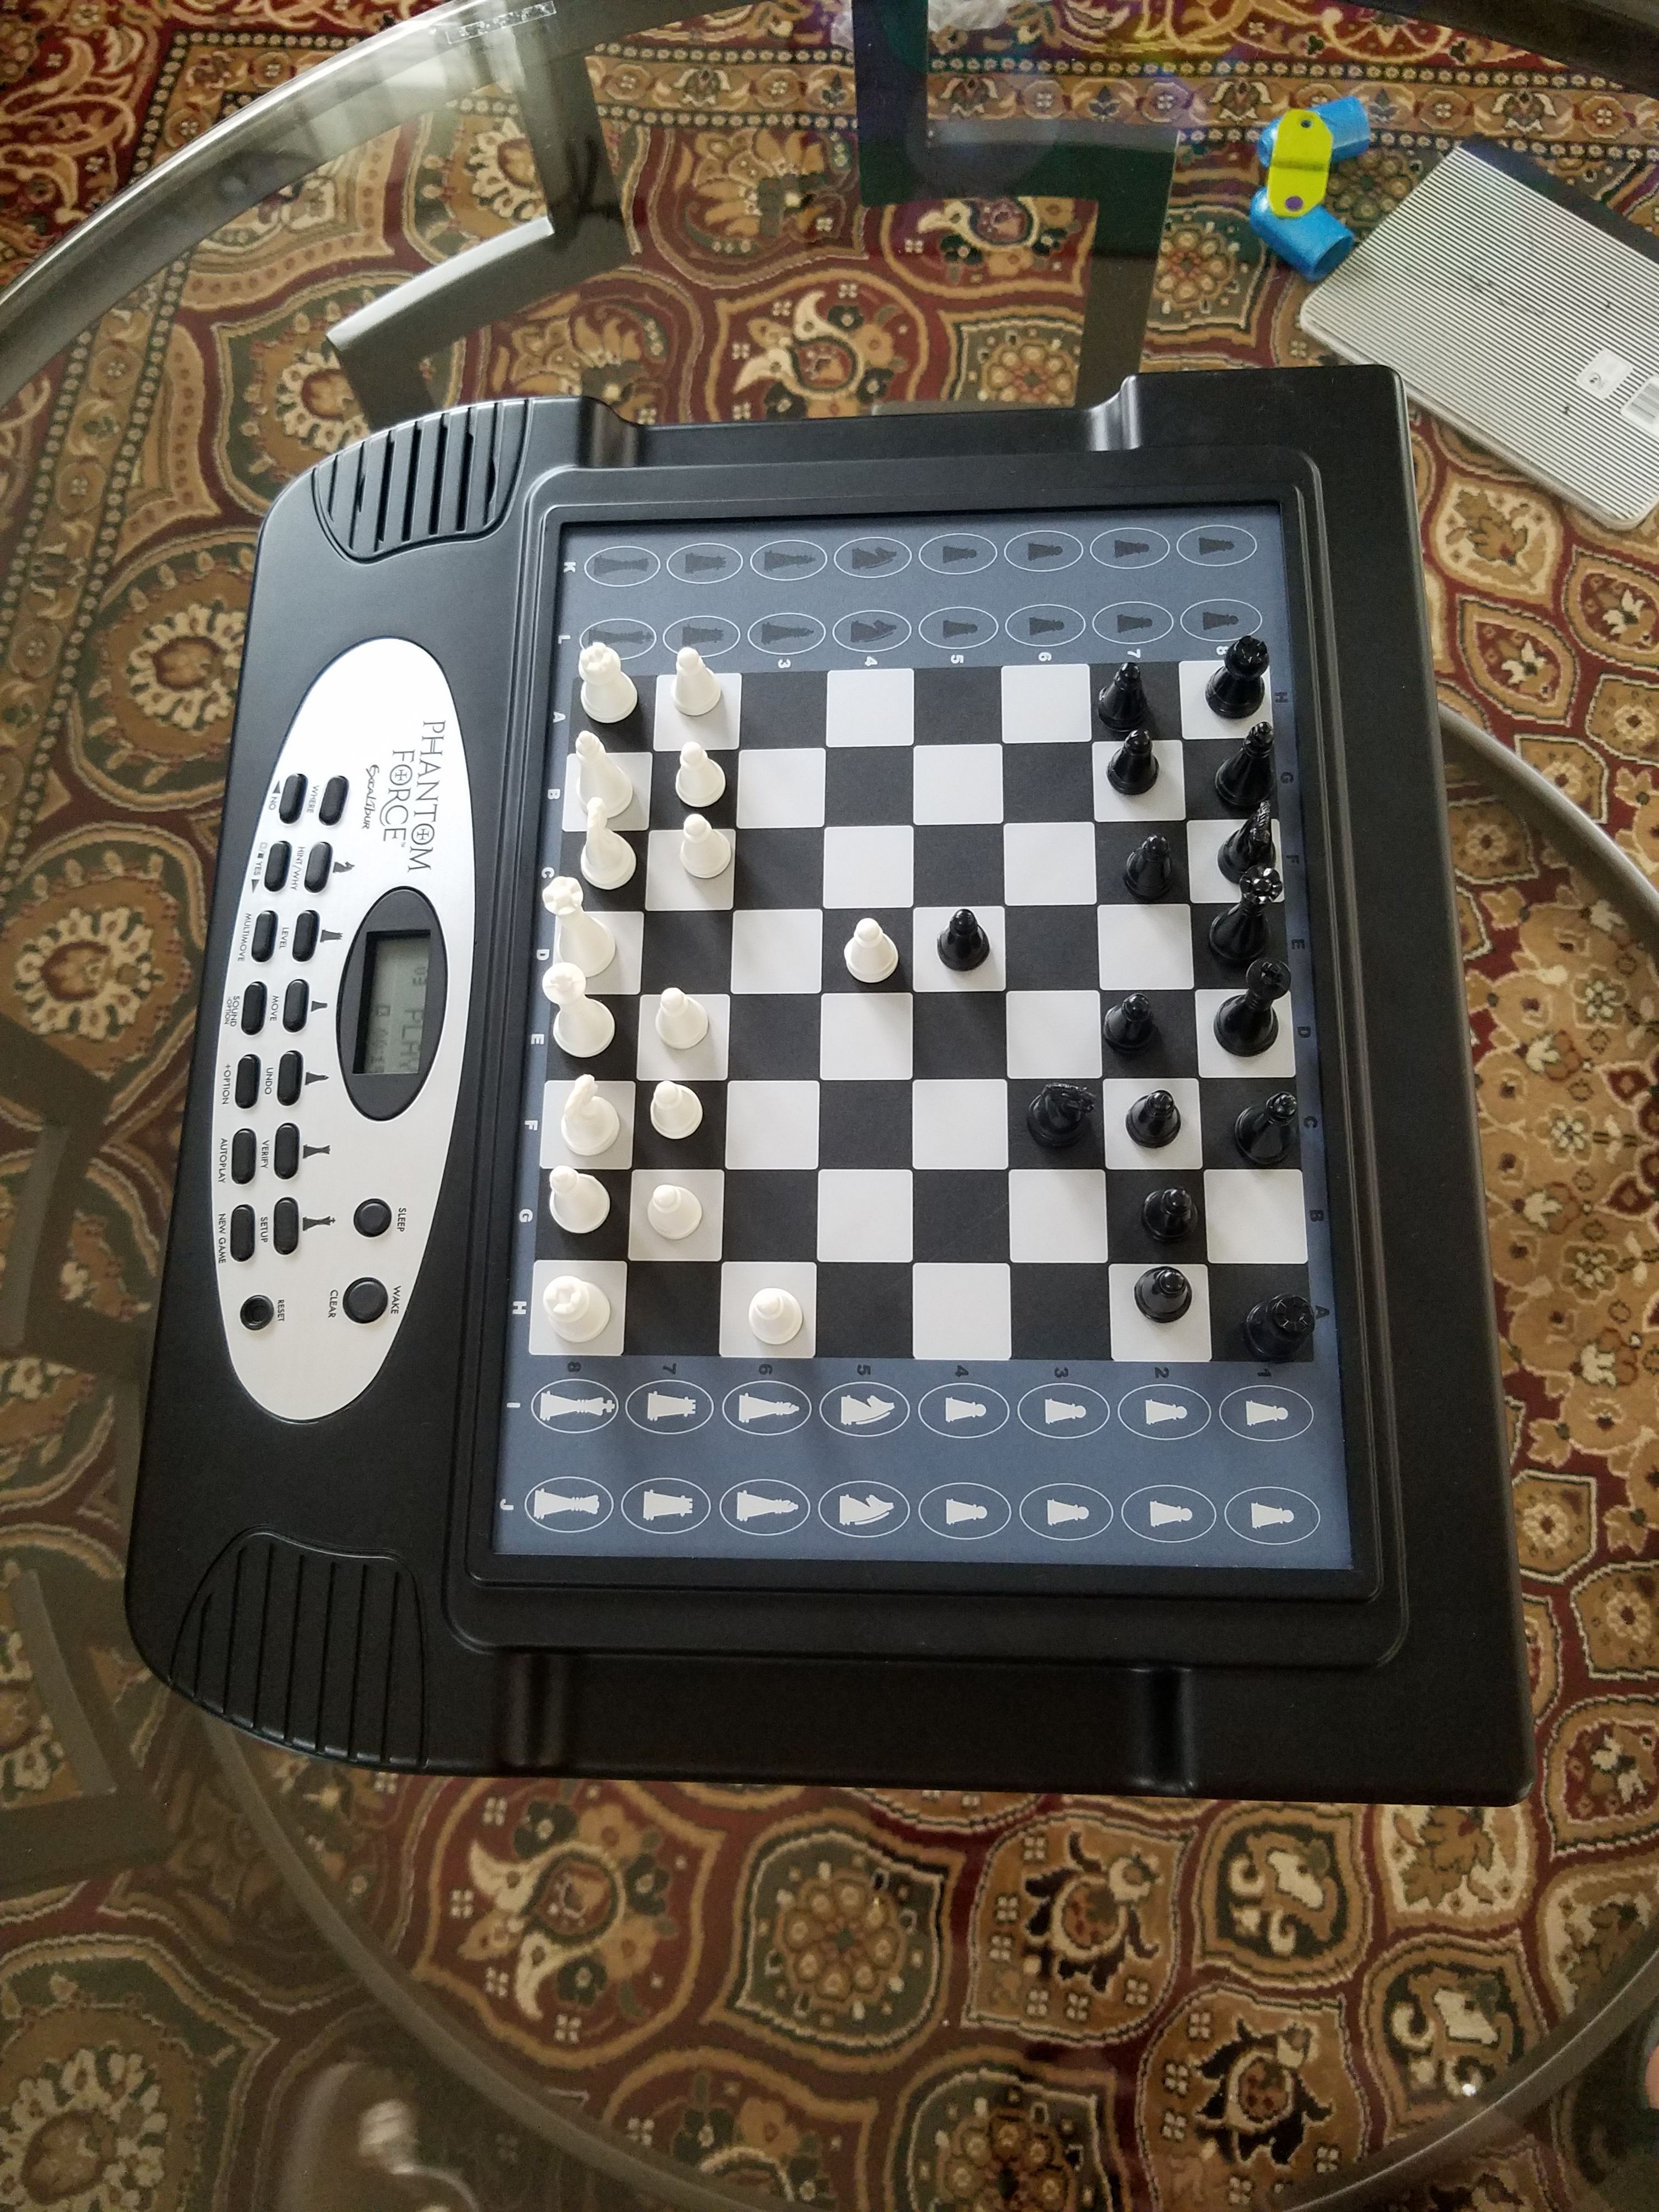 Phantom of the chessboard